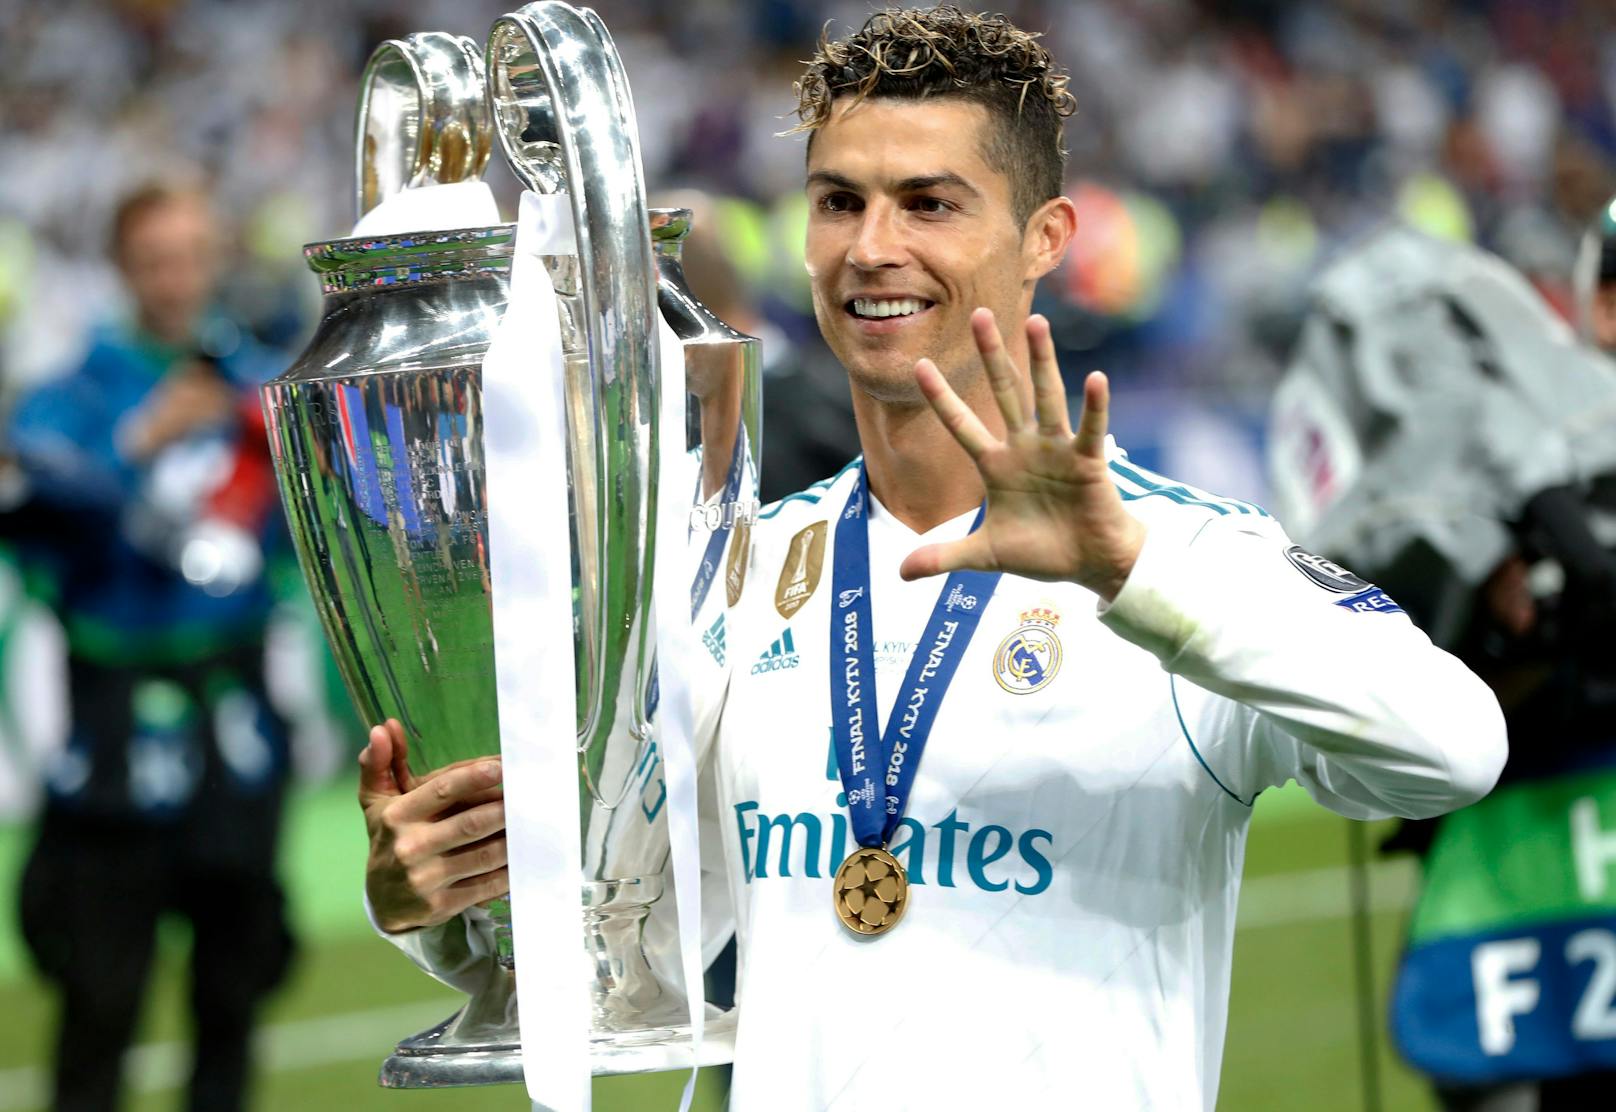 Dafür gab es vier Champions-League-Titel mit den Königlichen, den ersten 2014. Von 2016 bis 2018 schaffte Ronaldo mit Real das Kunststück drei Mal in Serie zu gewinnen, selbst schon die Titelverteidigung war eine Premiere im europäischen Fußball.